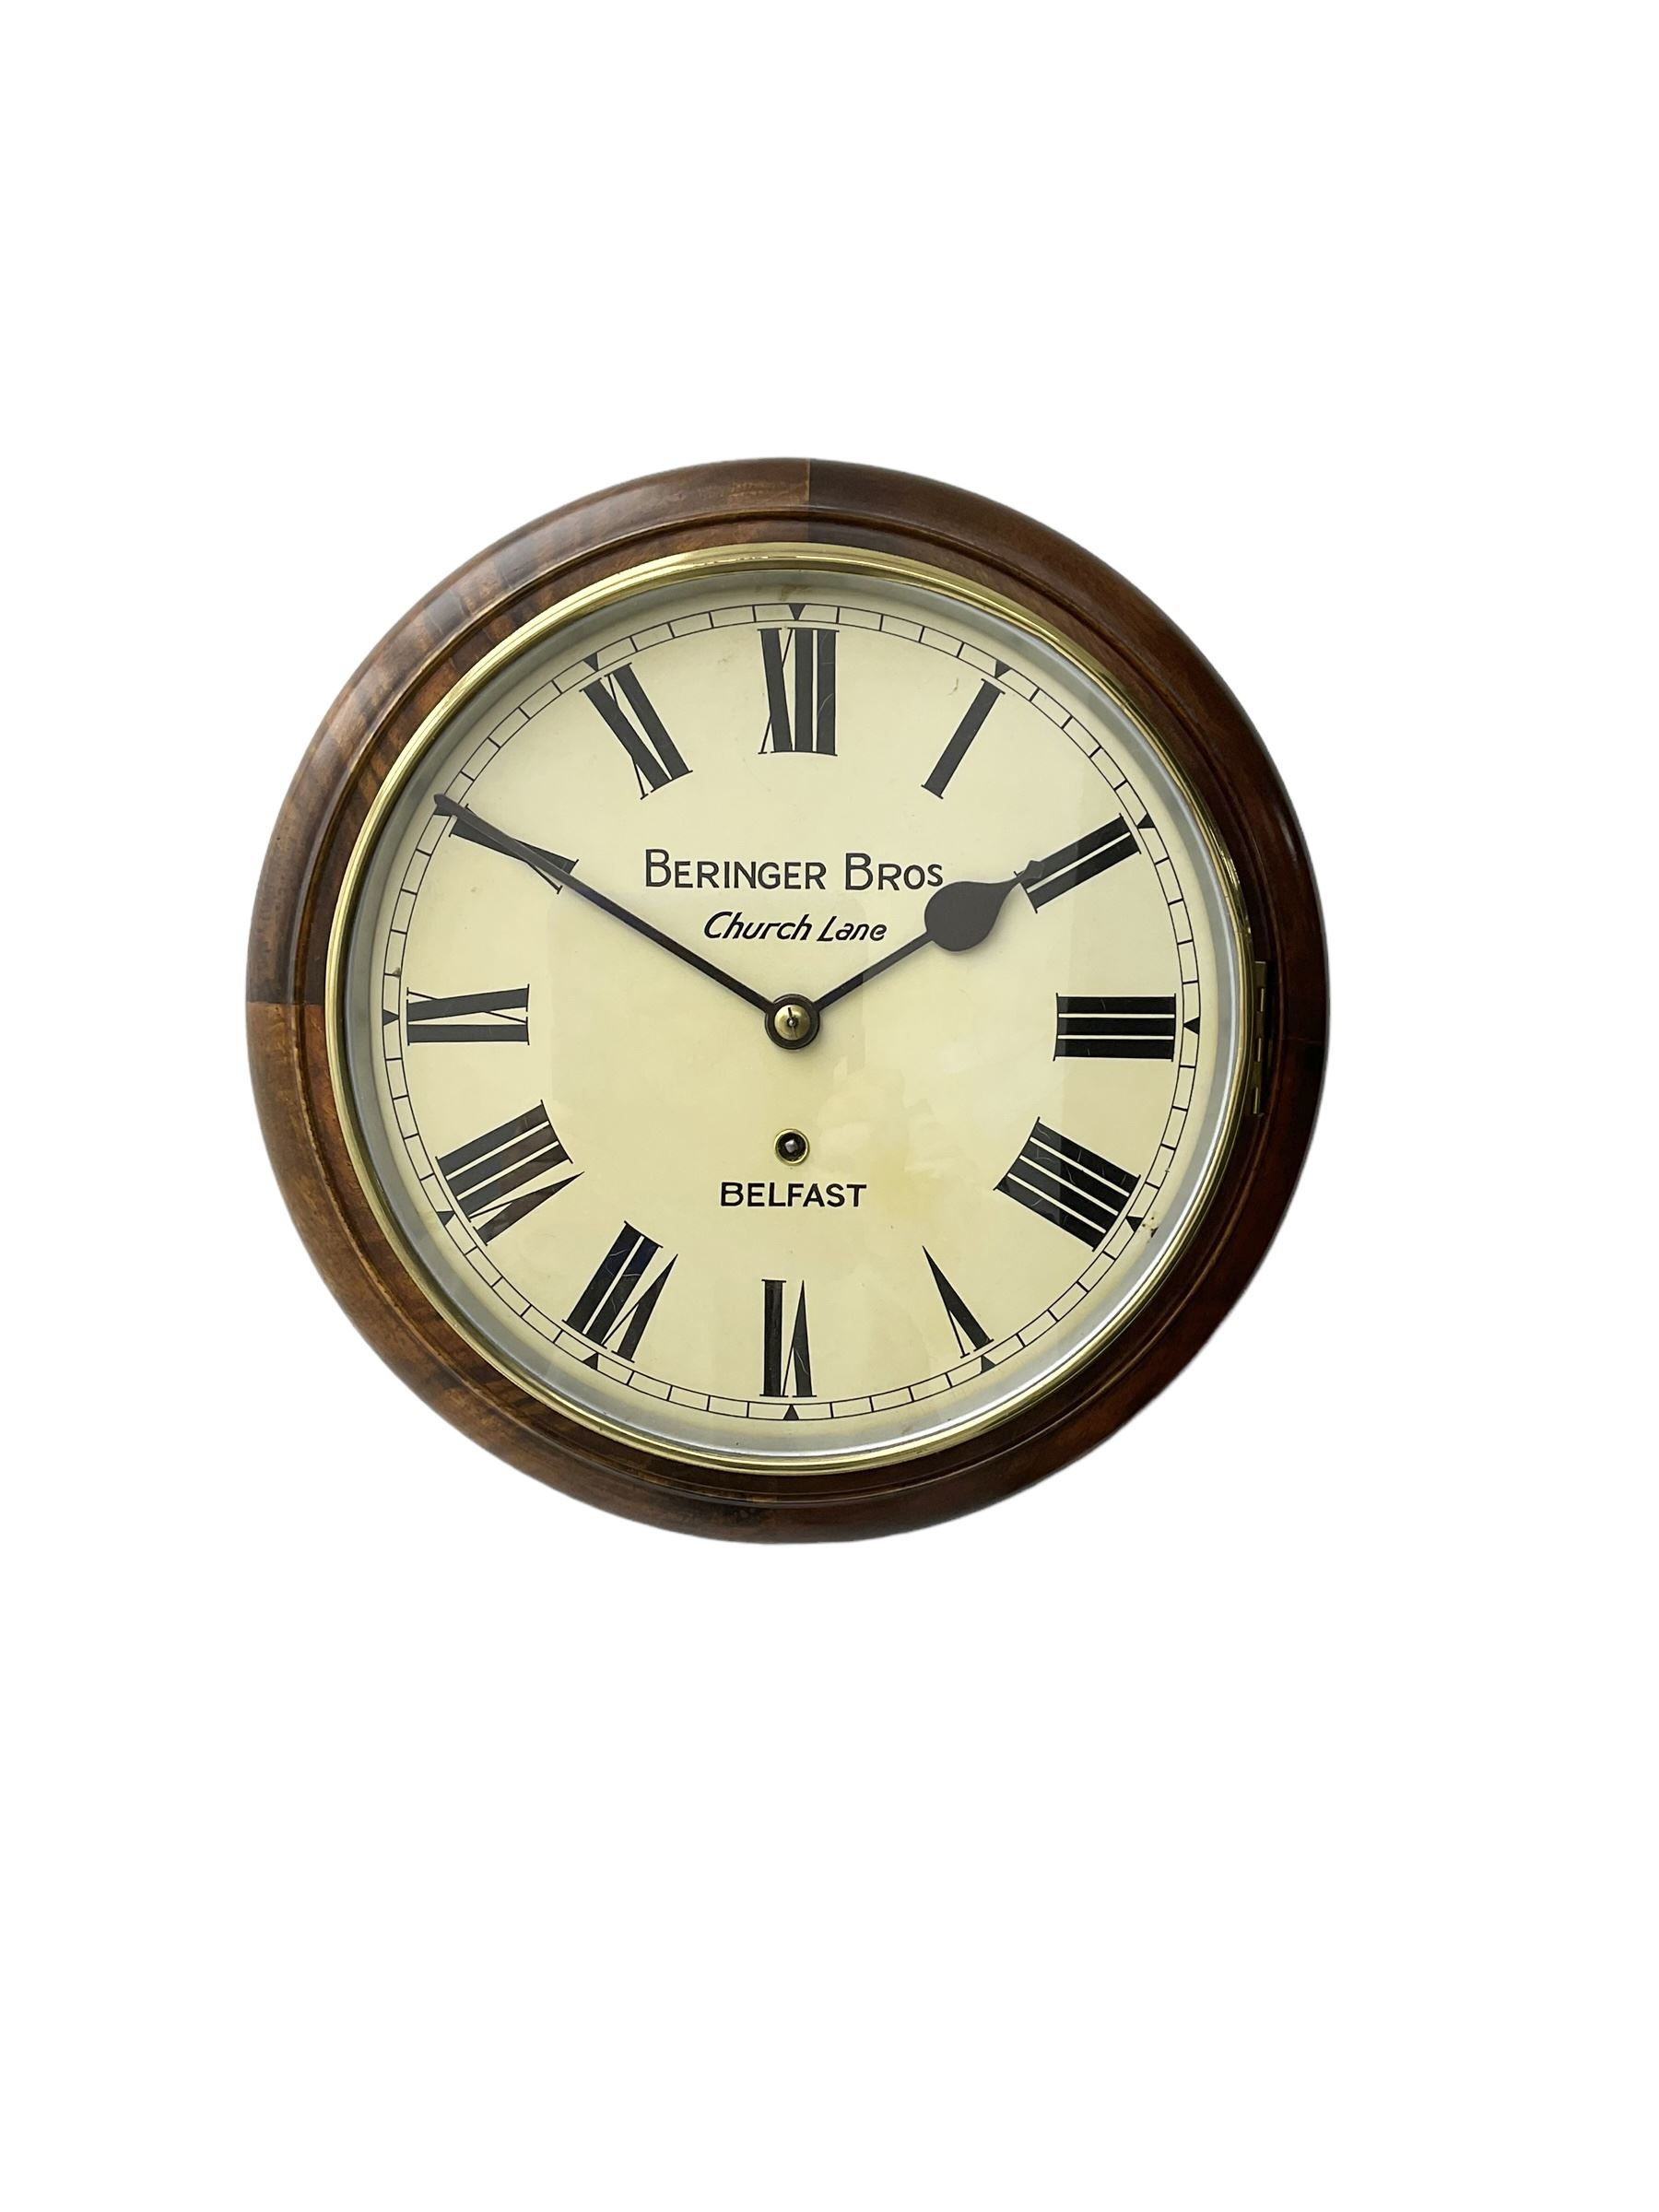 Early 20th century - 8-day mahogany wall clock